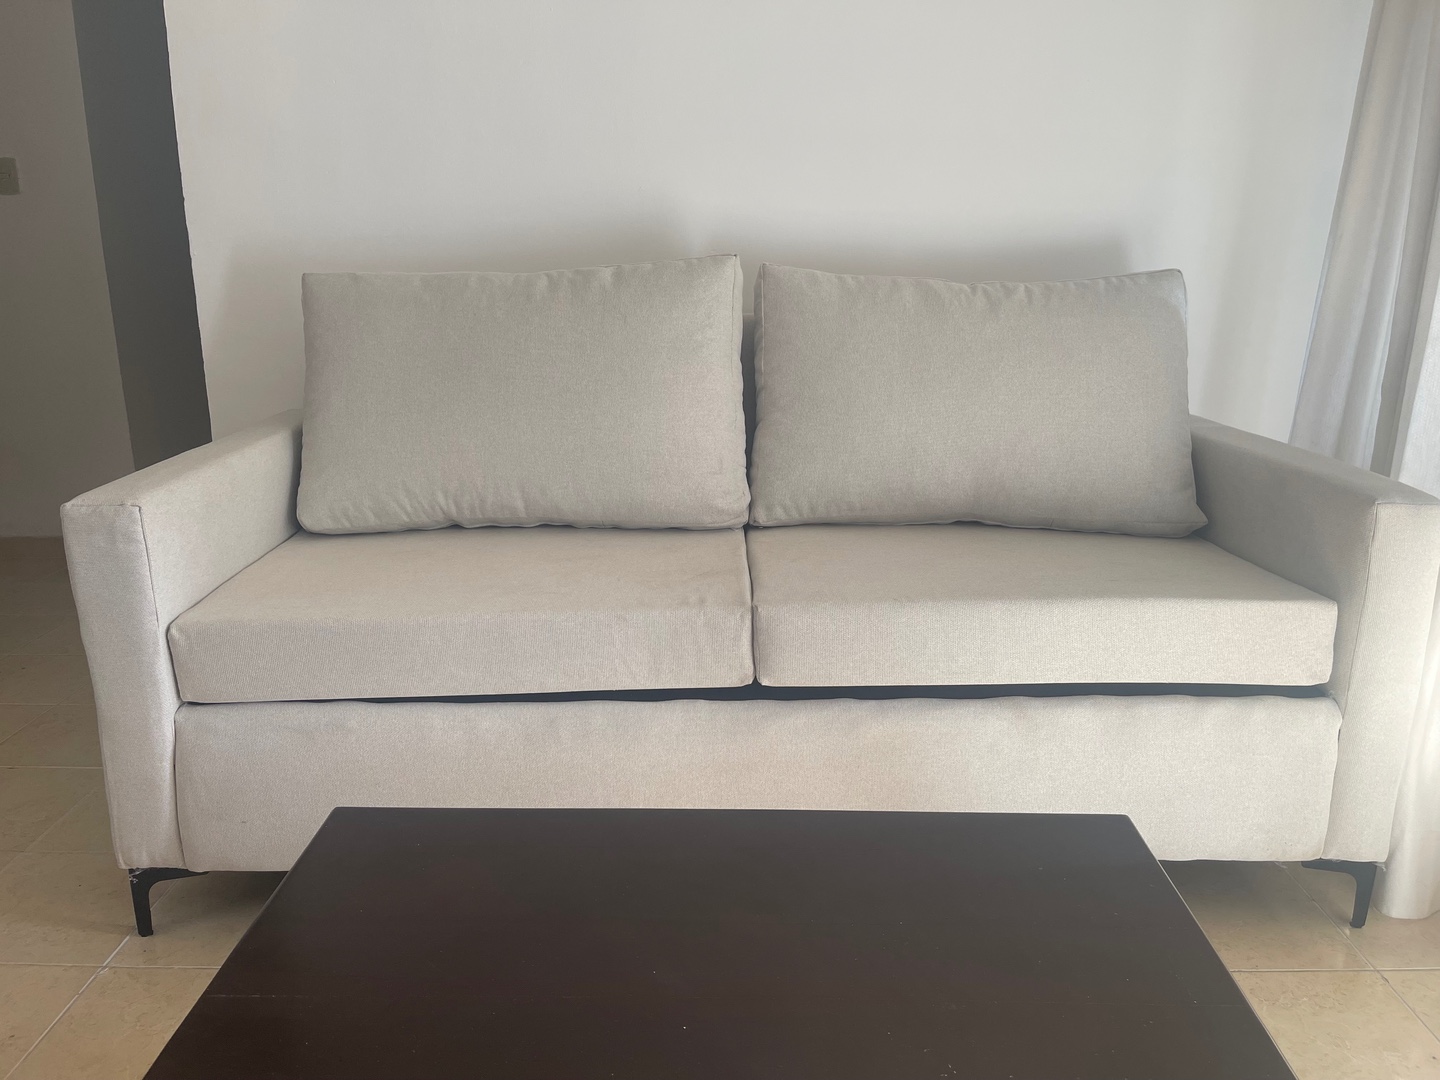 muebles y colchones - Juego de muebles recién tapizados color beige RD$30,000